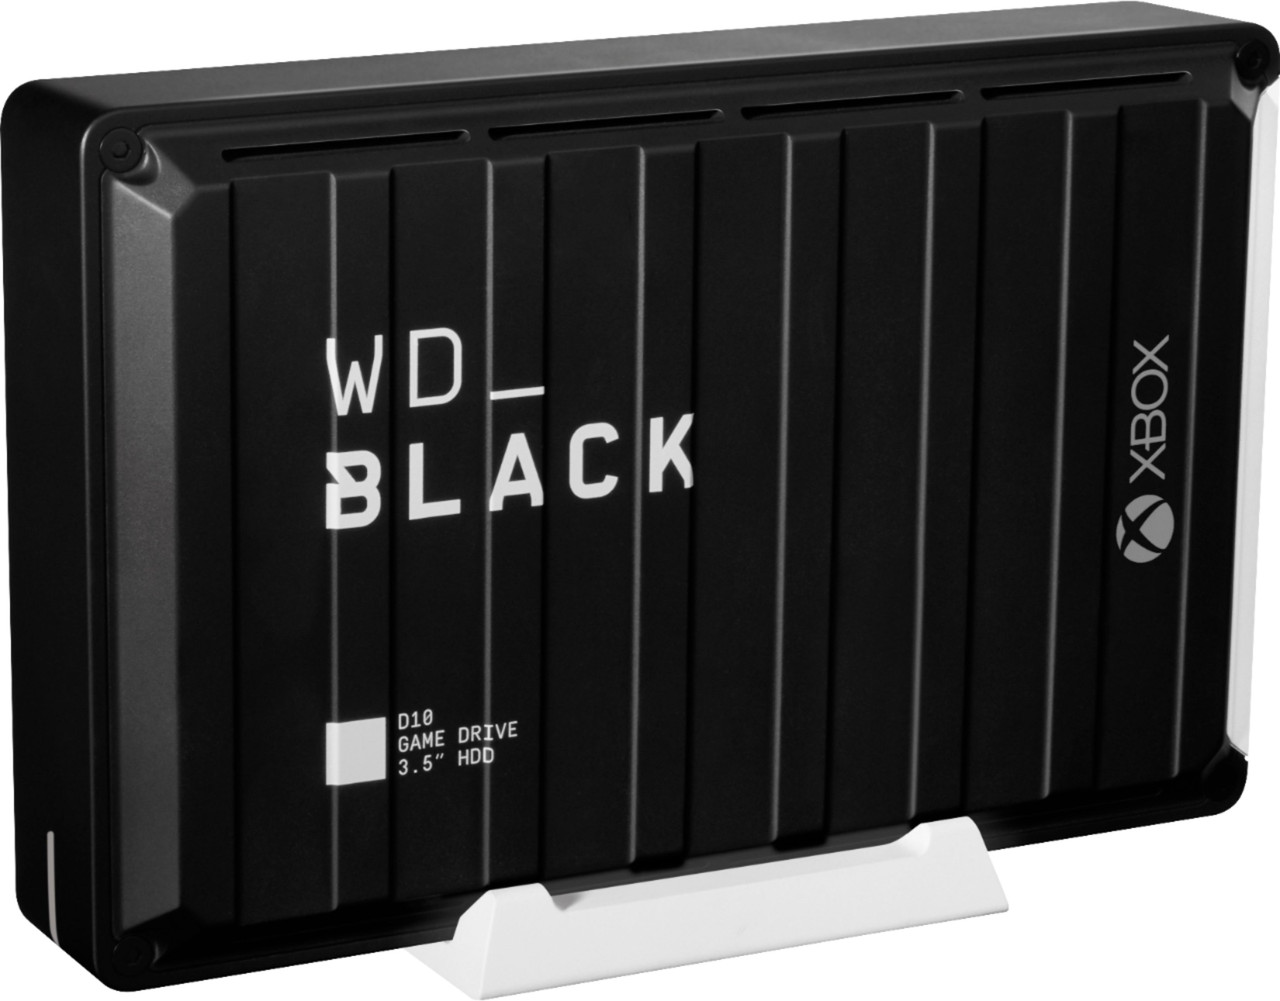 WD - WD_BLACK D10 12TB External USB 3.2 Gen 1 Hard Drive - Black